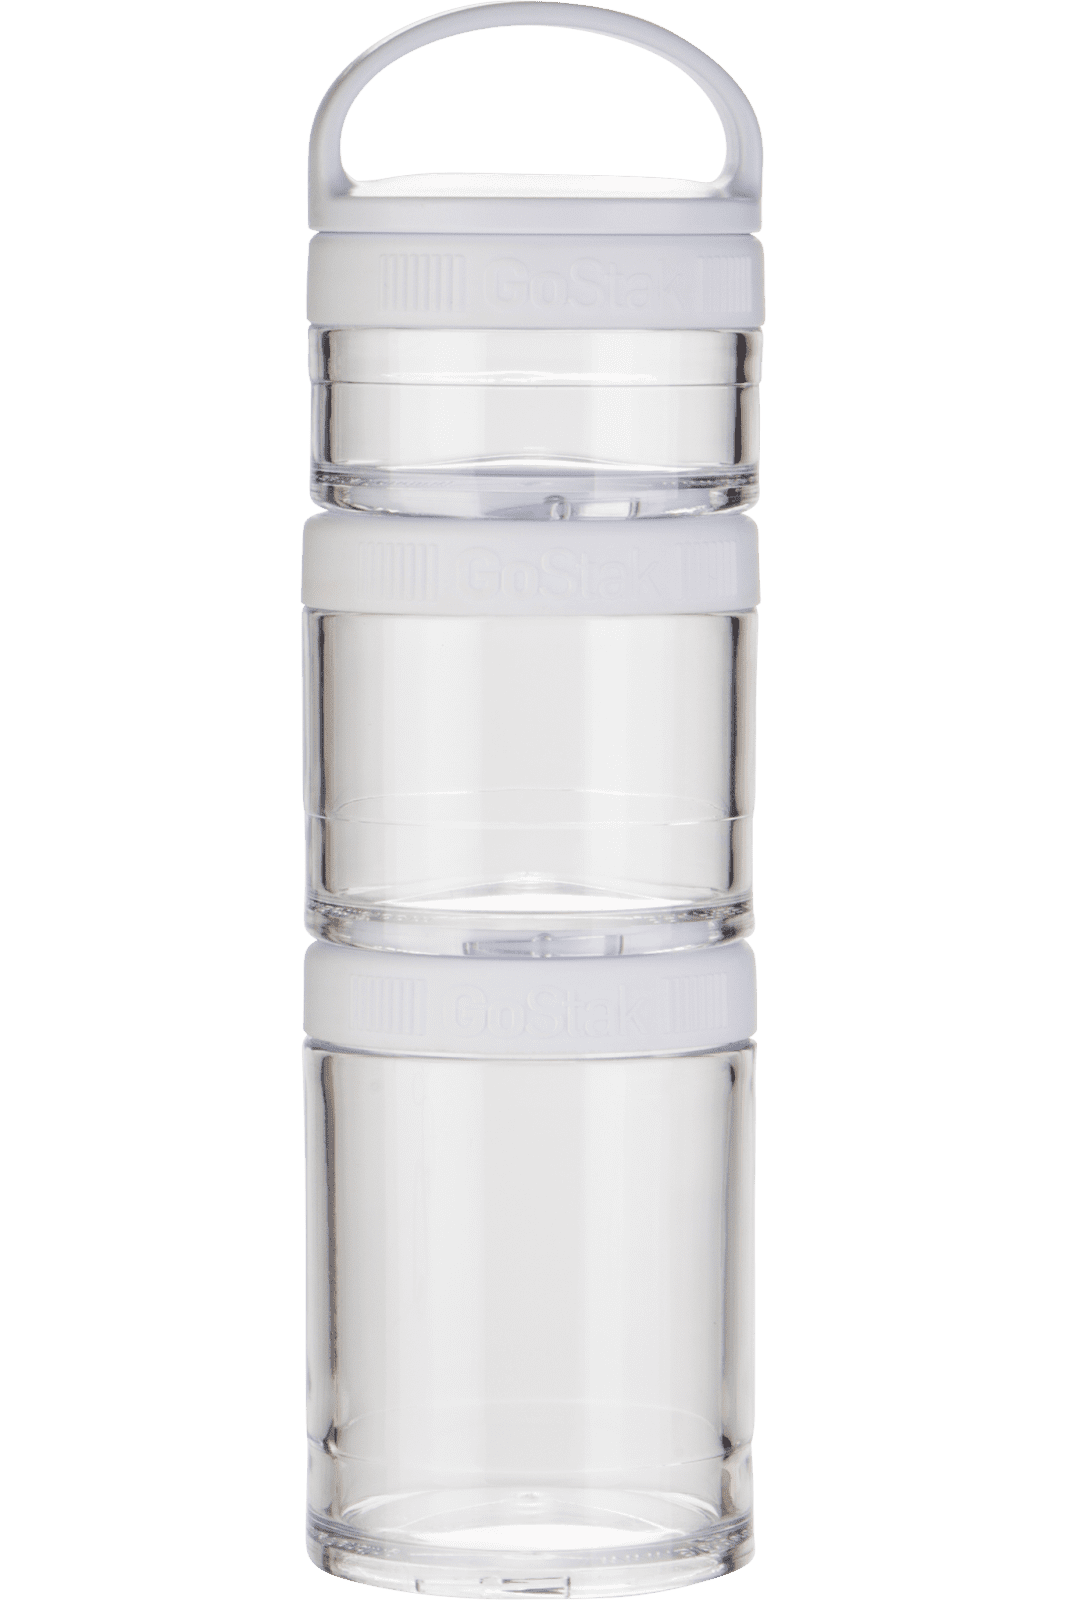 BlenderBottle Recalls Whiskware Glass Dressing Shaker Bottles Due